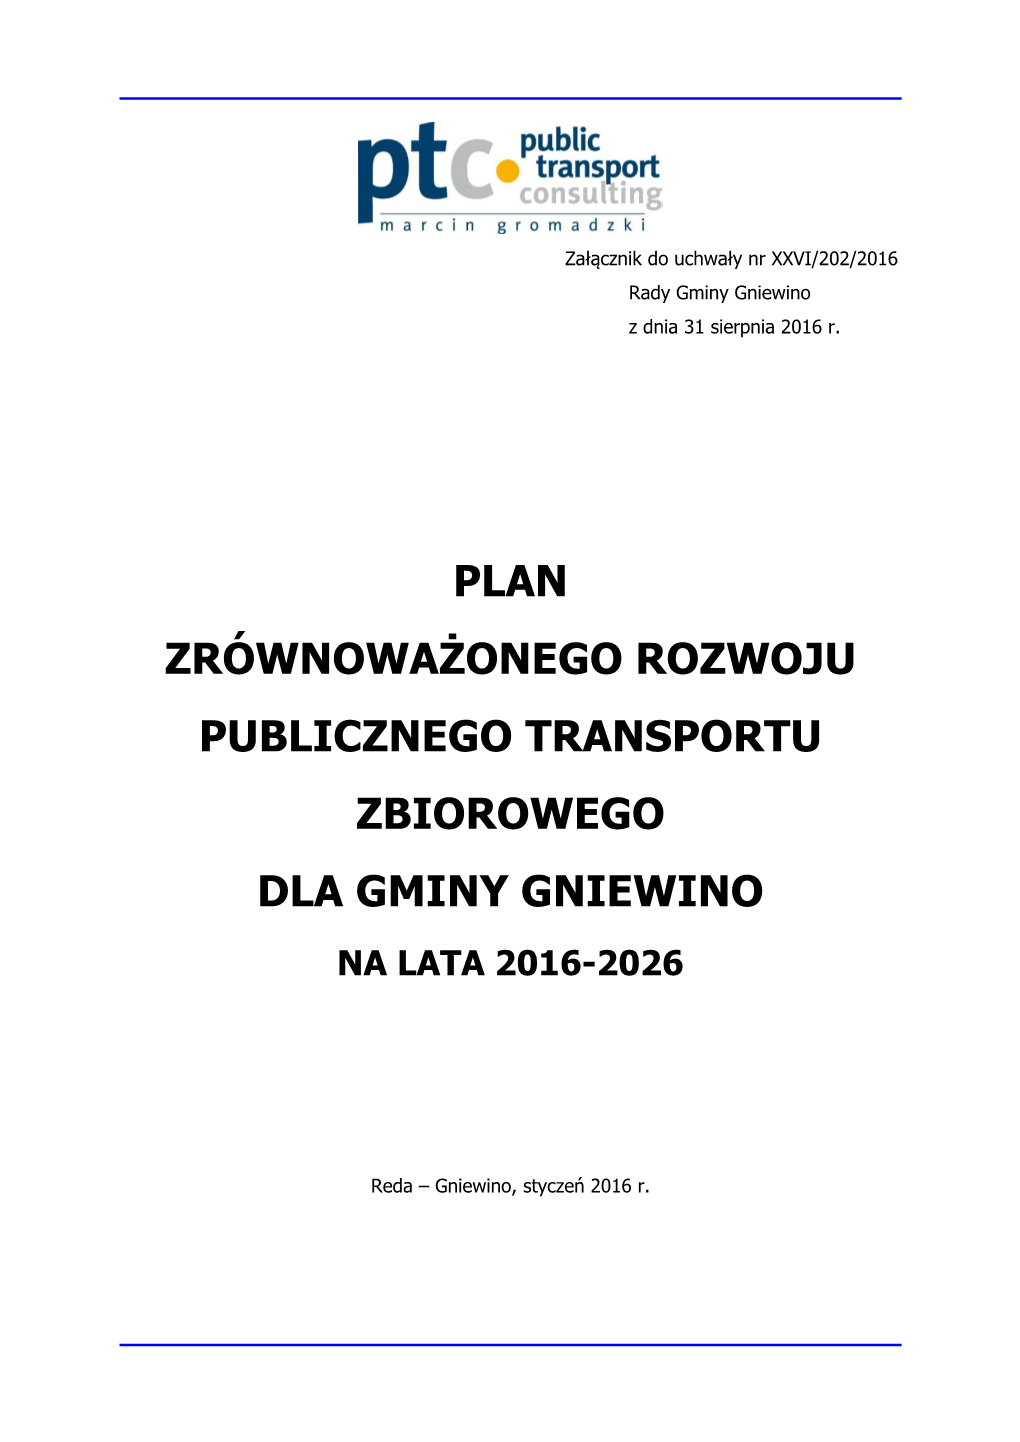 Plan Zrównoważonego Rozwoju Publicznego Transportu Zbiorowego Dla Gminy Gniewino Na Lata 2016-2026